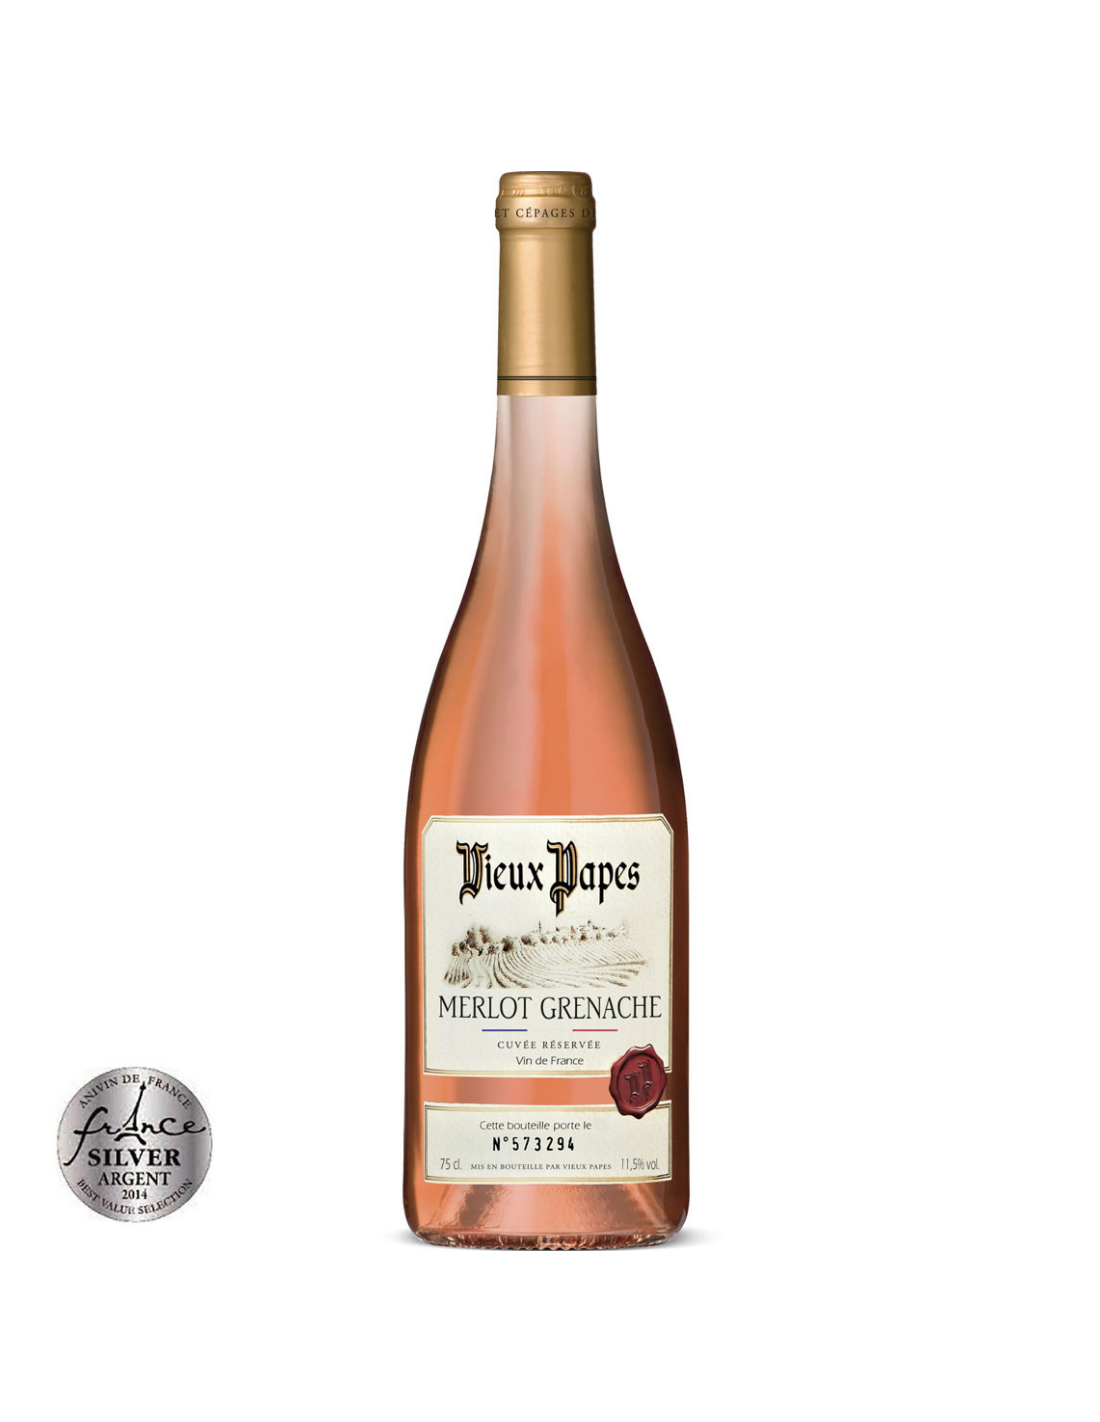 Vin roze sec, Greanche Merlot, Vieux Papes Cuvée Réservée, 11.5% alc., 0.75L, Franta alcooldiscount.ro